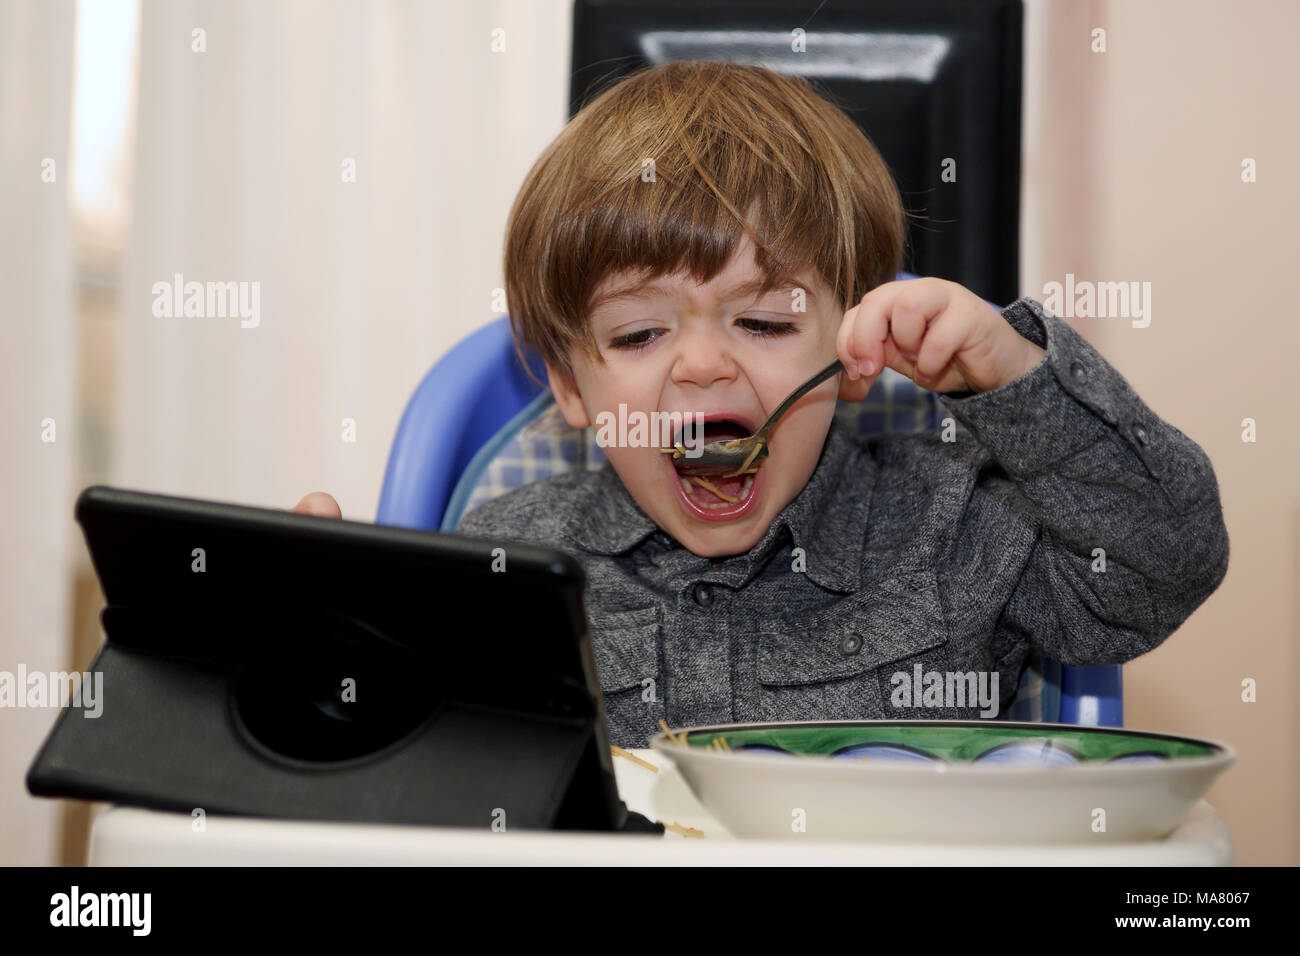 Jeune garçon regardant une tablette électronique tout en mangeant.Crédit : Mario Beauregard/Alamy Live News Banque D'Images